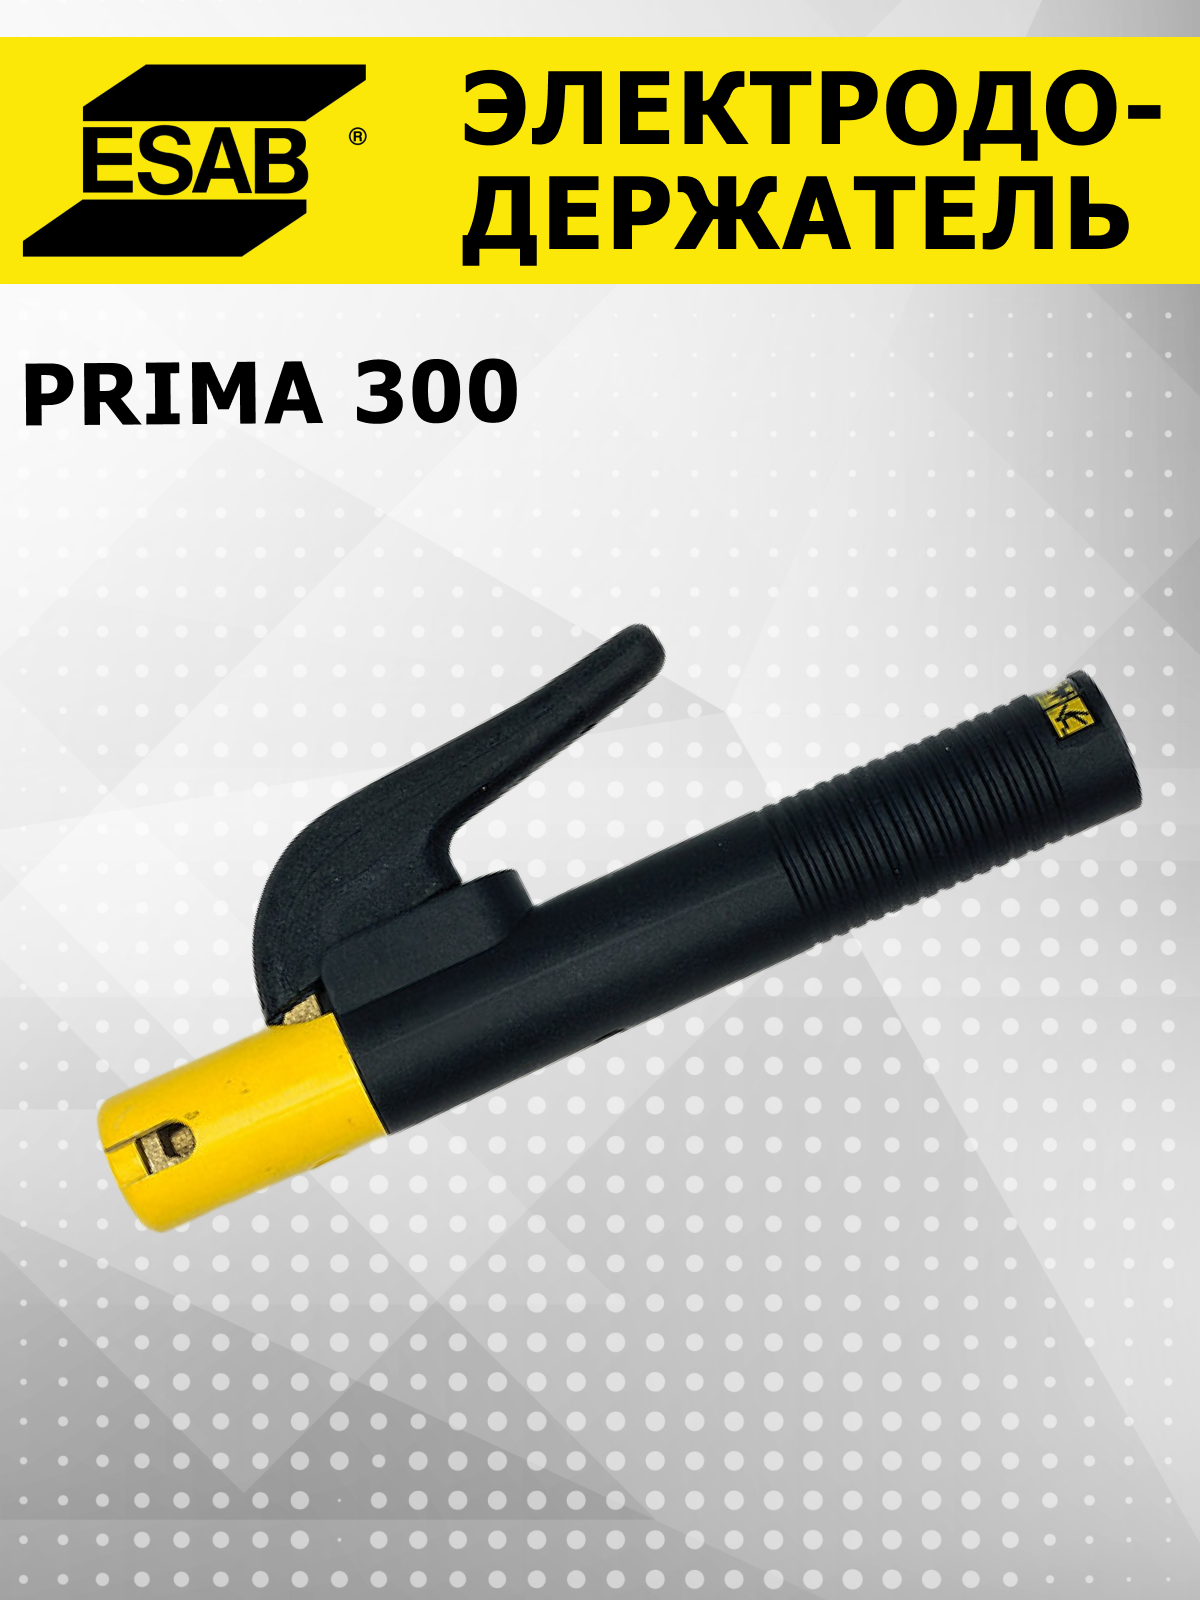 Электрододержатель Prima 300 держак для сварки ESAB